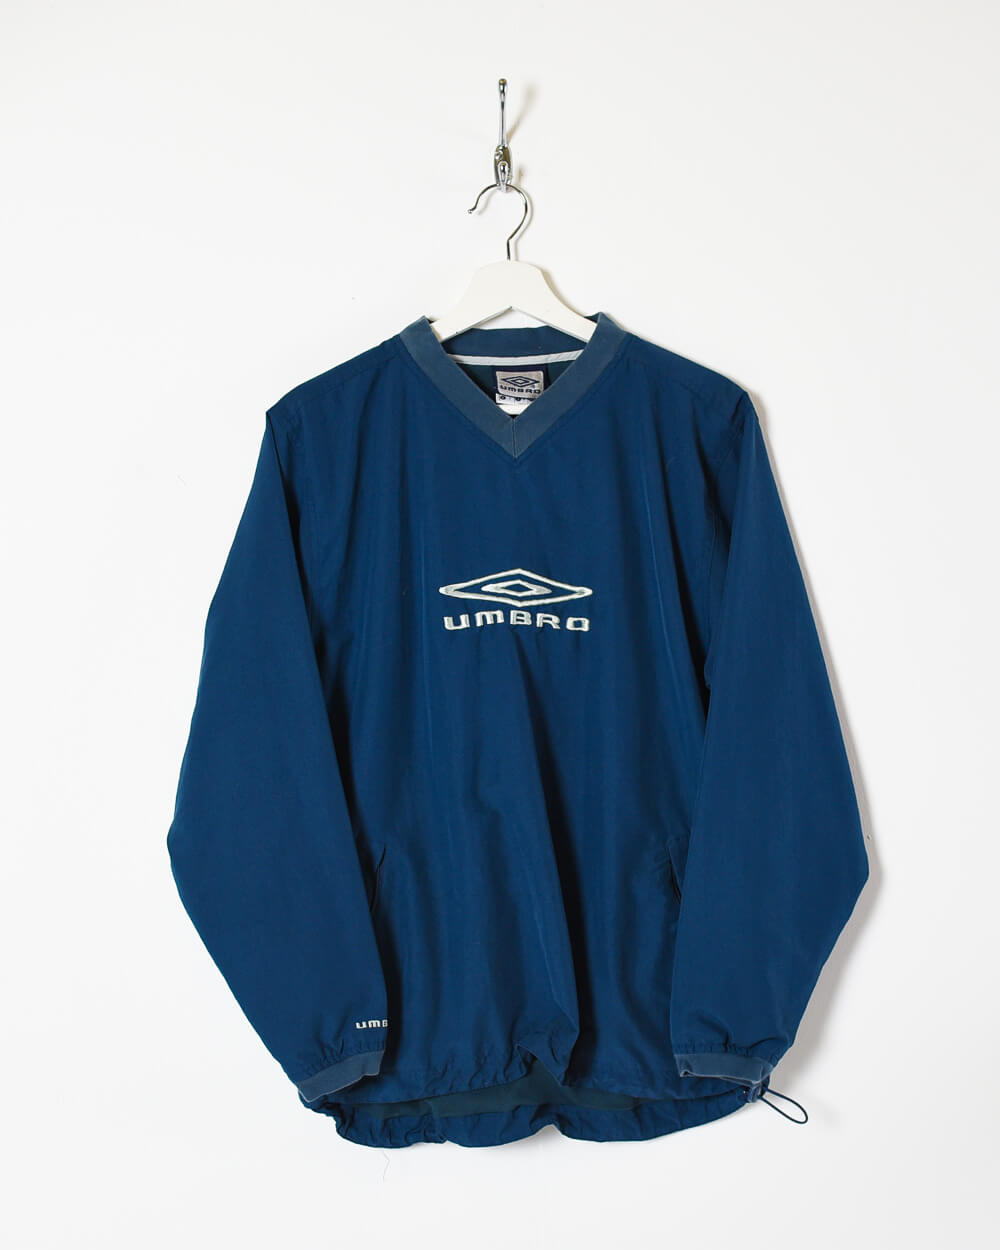 Blue Umbro Pullover Windbreaker Jacket - Small